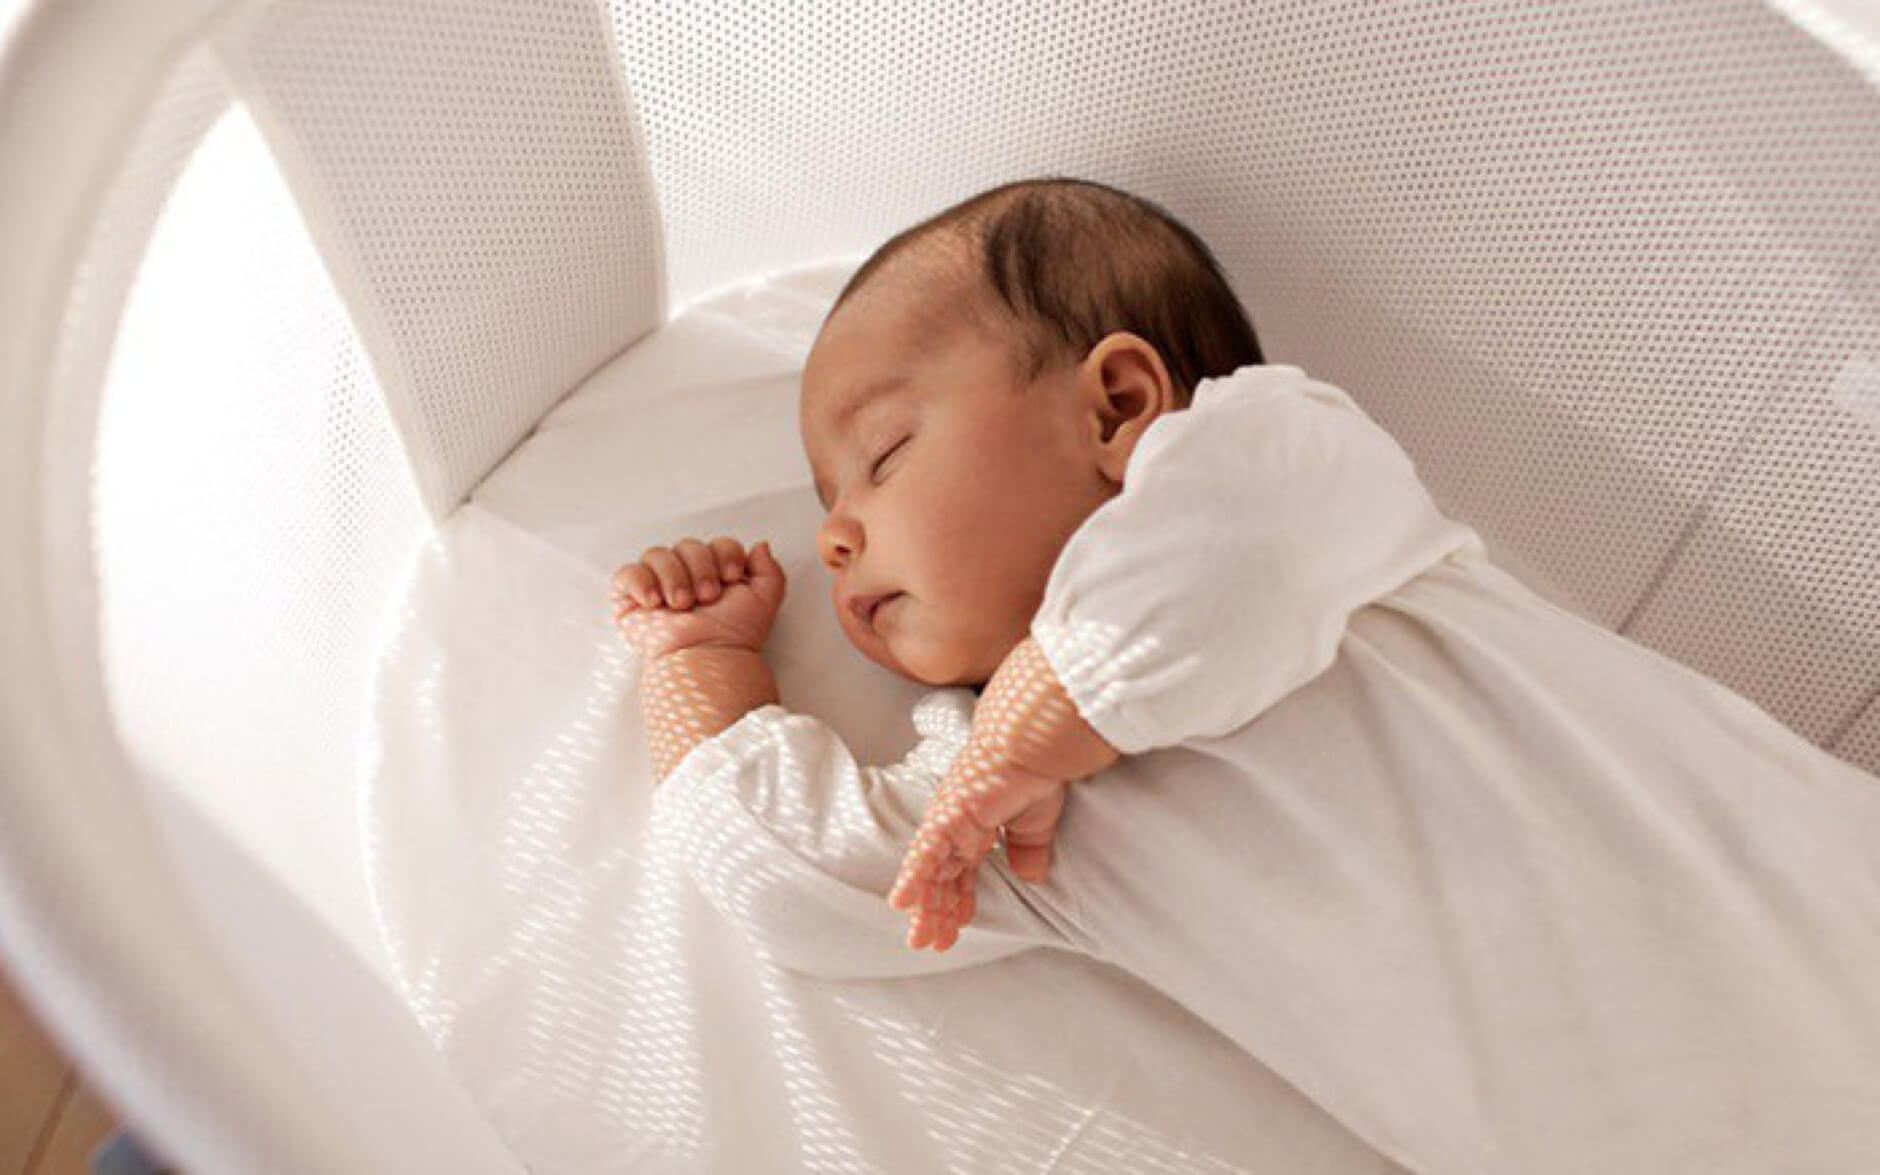 Trẻ sơ sinh ngủ nhiều có tốt không?